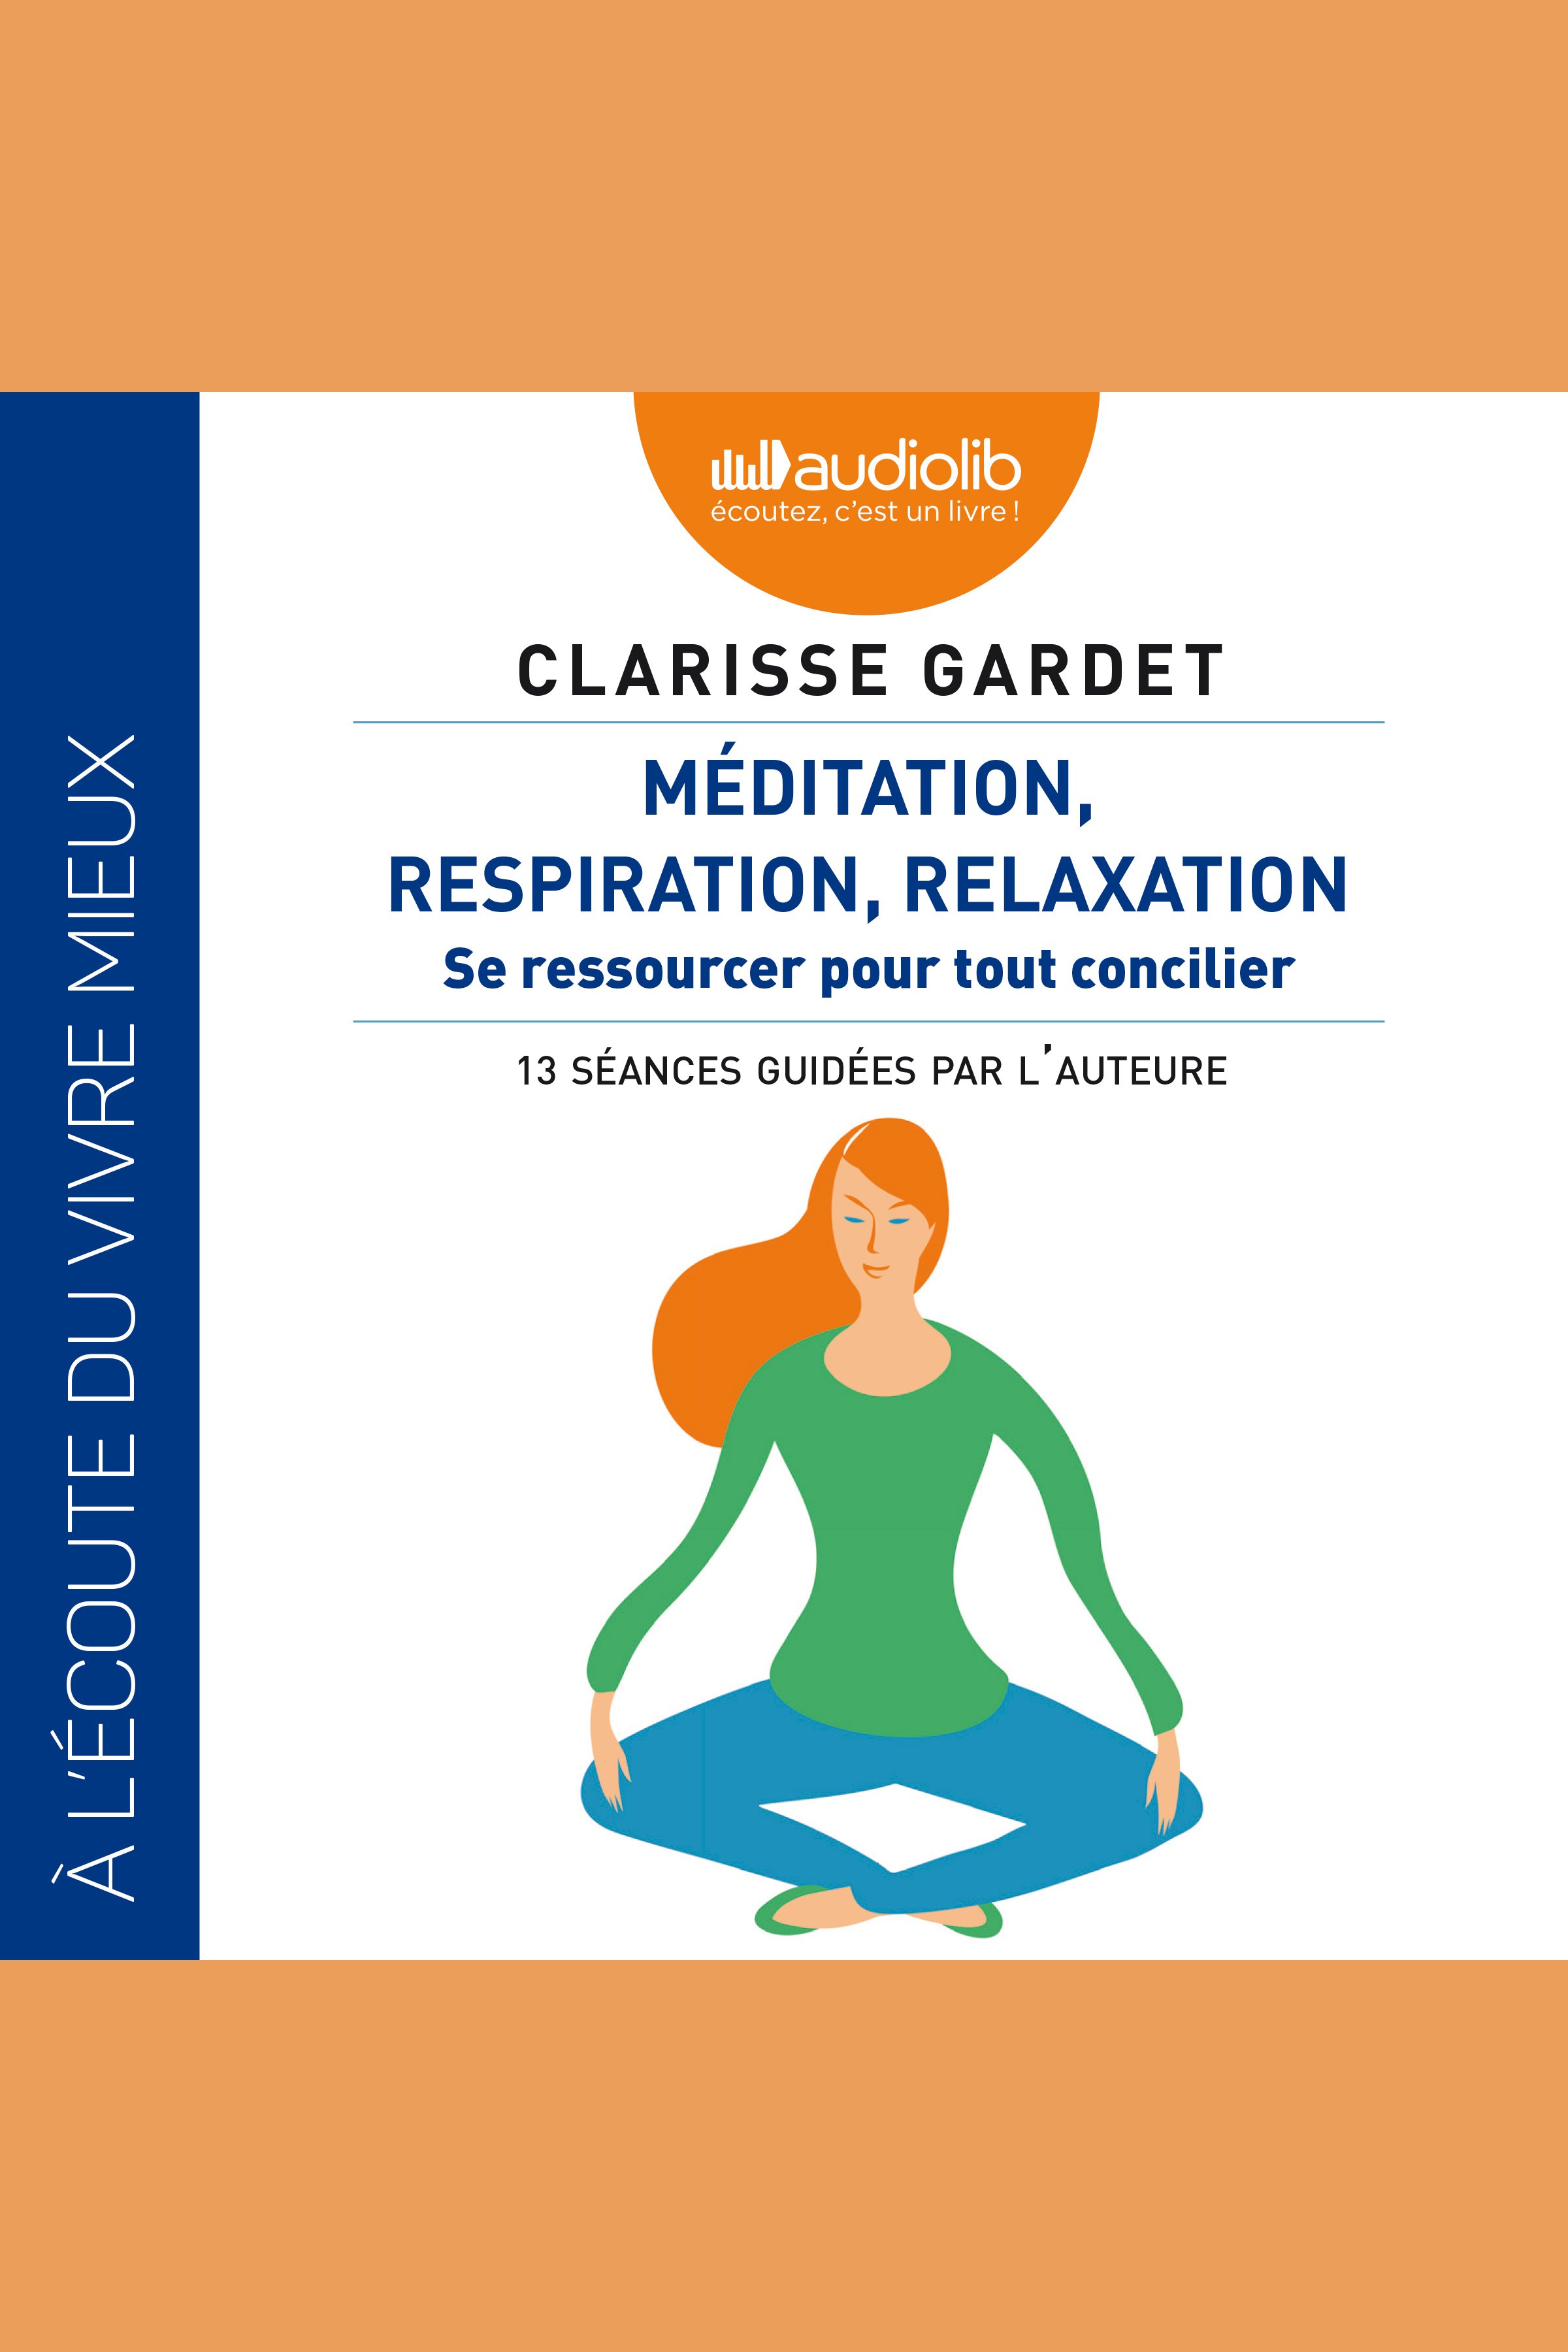 Image: Méditation, respiration, relaxation - Se ressourcer pour tout concilier